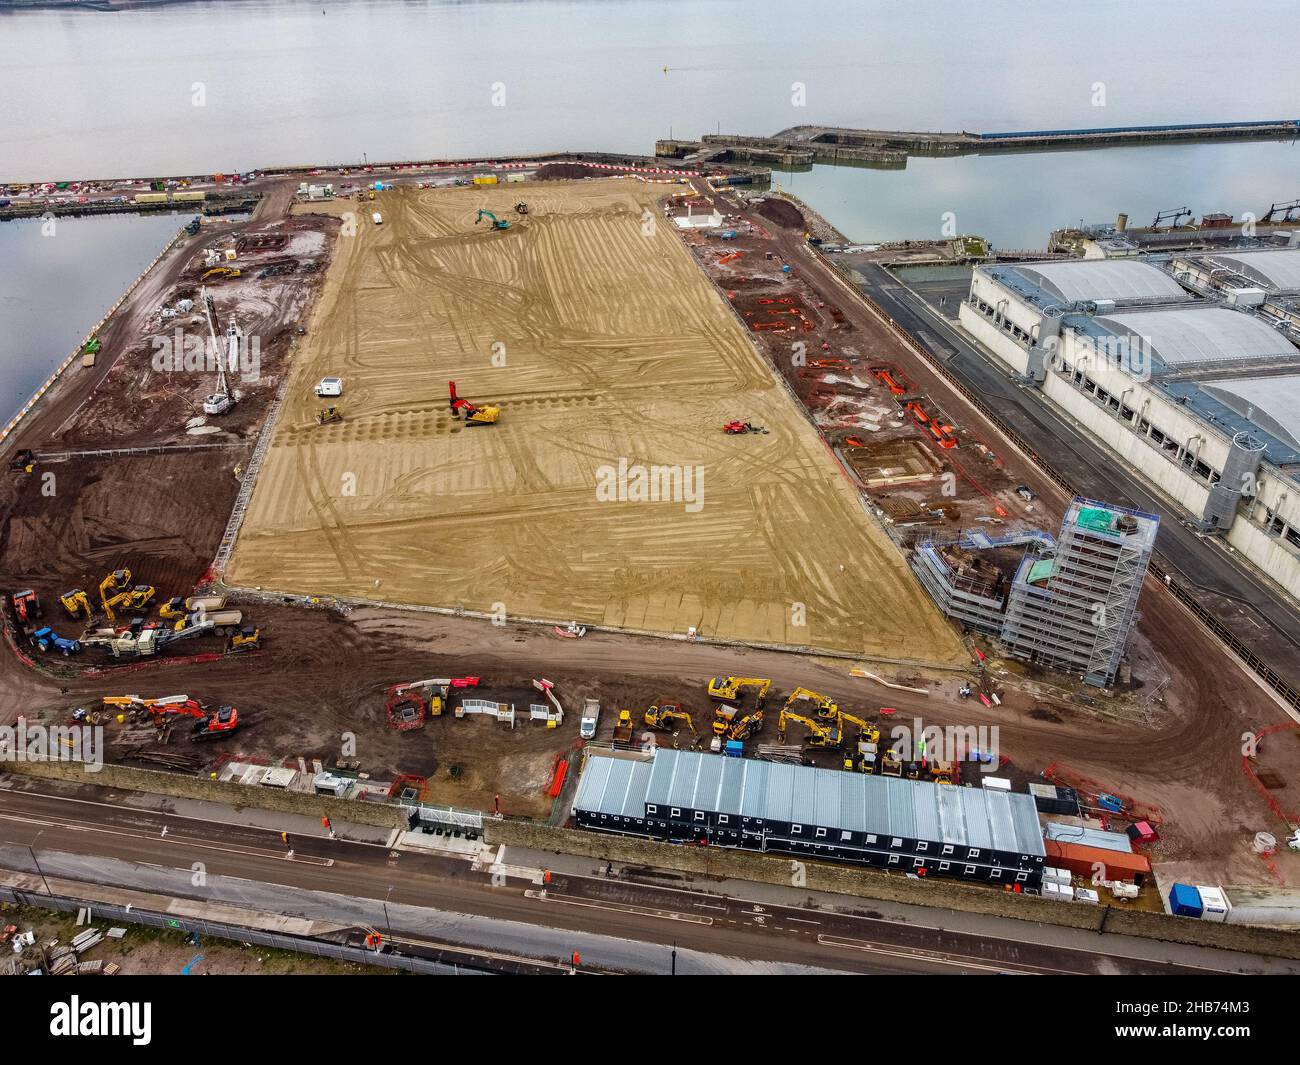 Eine Luftaufnahme der Bauarbeiten auf dem Gelände des neuen Stadions des Everton Football Clubs, das am Bramley-Moore Dock errichtet wird. Bilddatum: Freitag, 17. Dezember 2021. Stockfoto